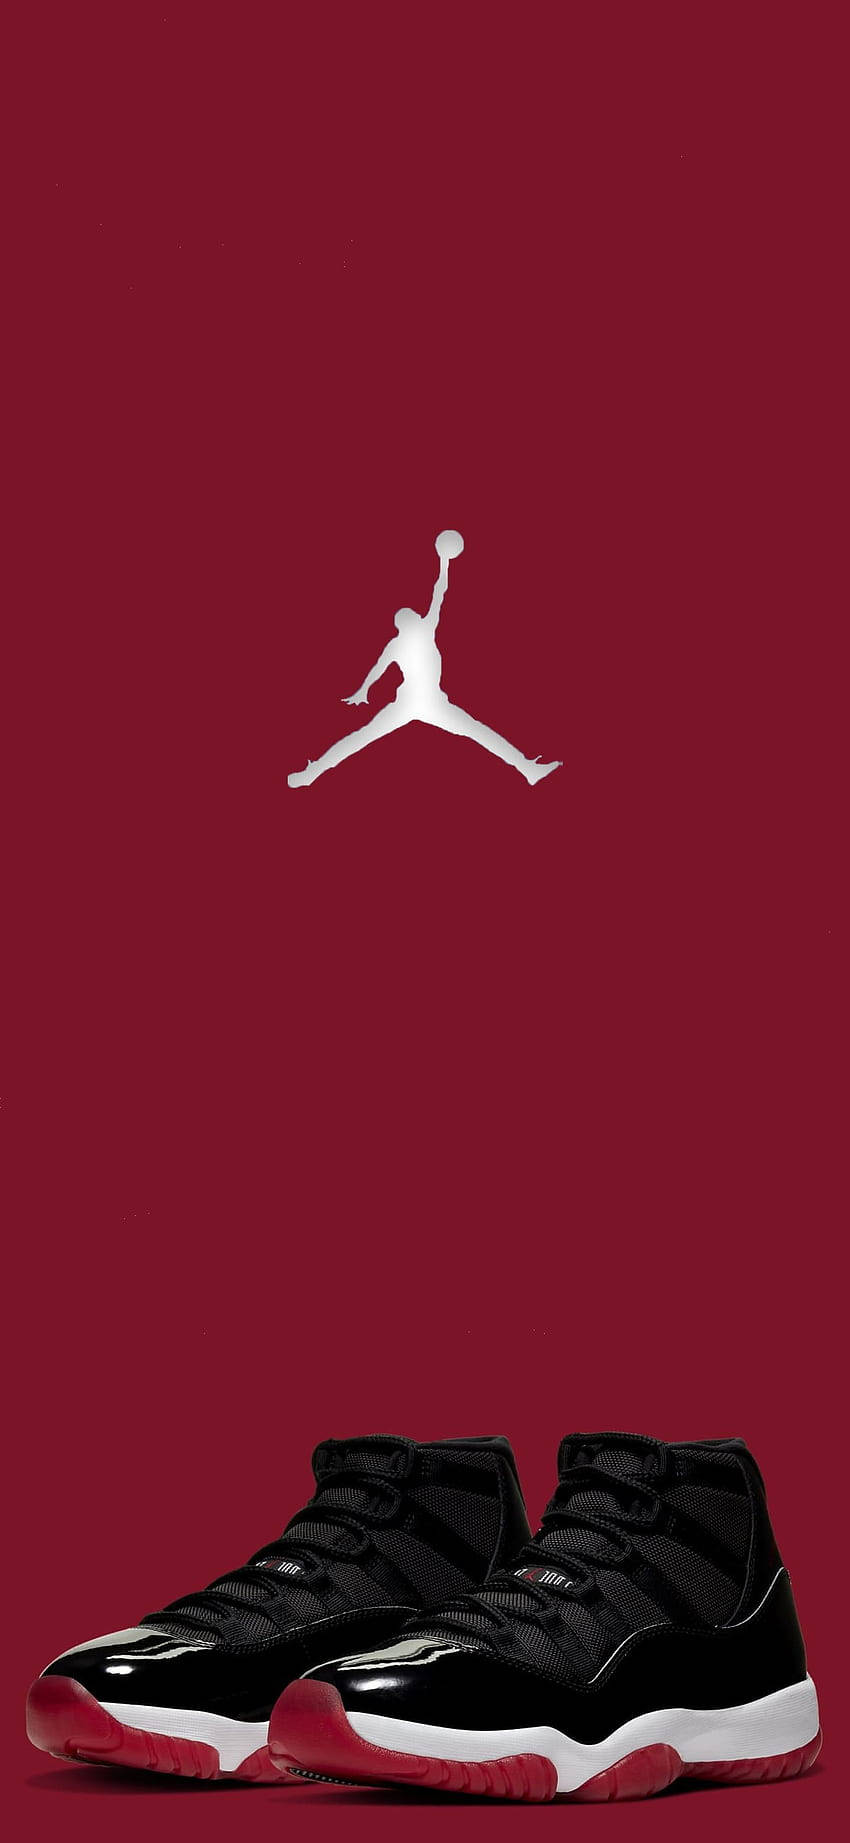 Air Jordan Shoes Retro Bred 2019 Wallpaper